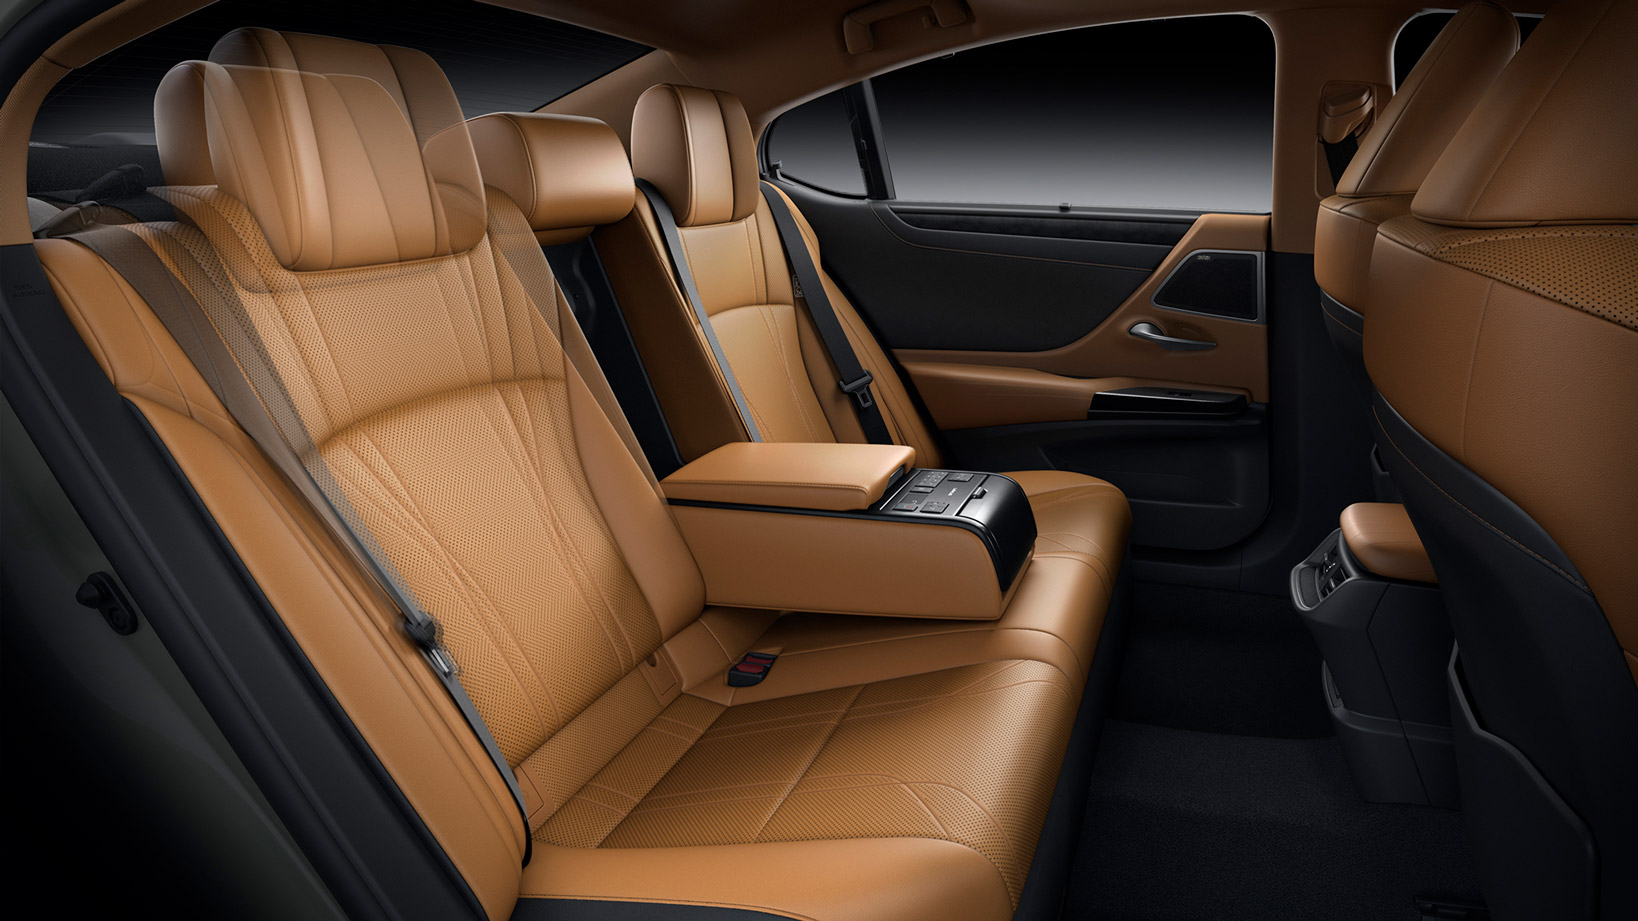 Interior of the 2021 Lexus ES 300h Sports Luxury.